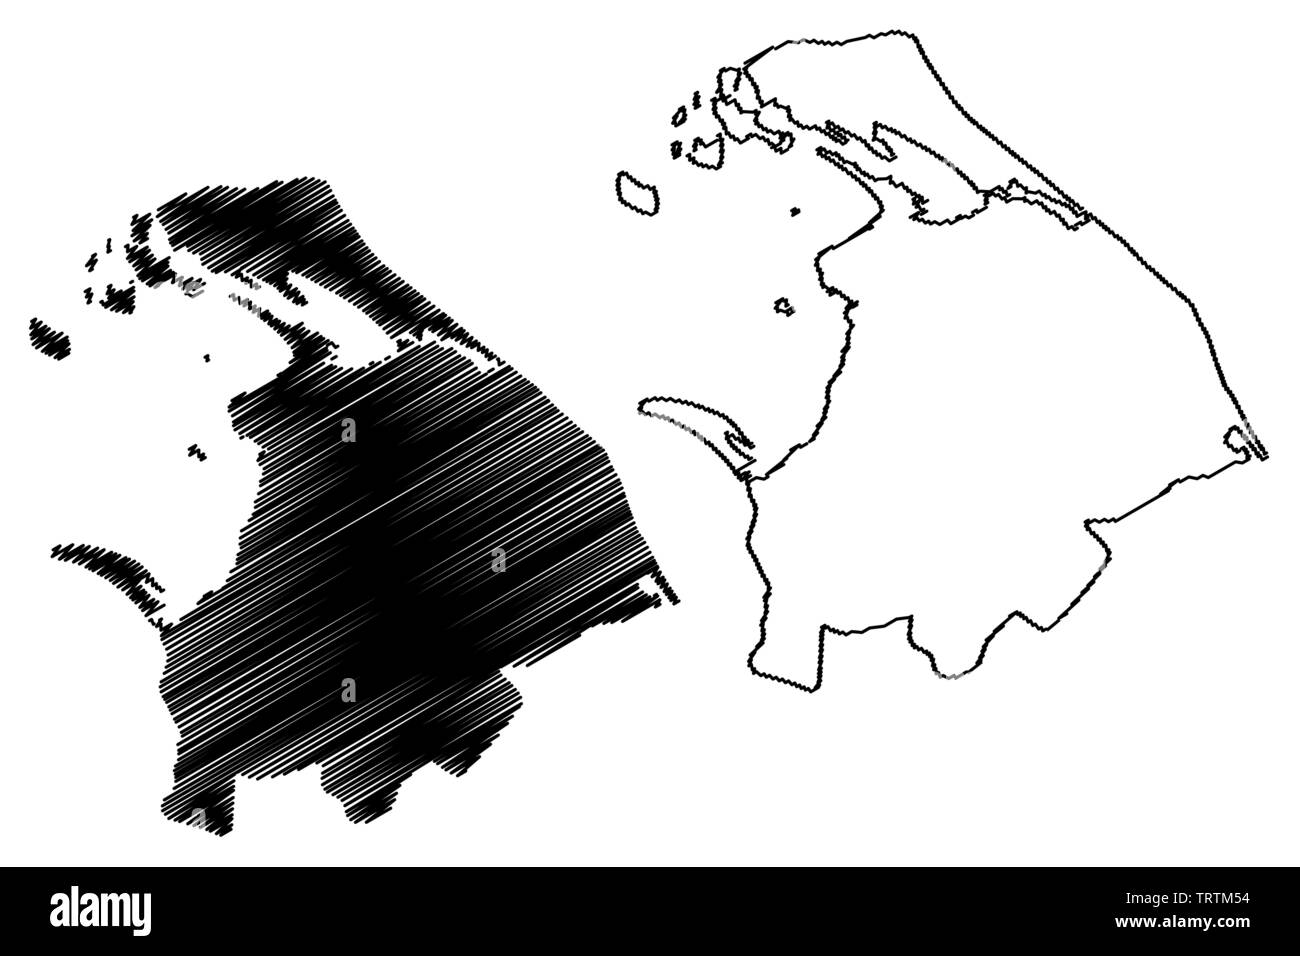 Province du Nord, Sri Lanka (divisions administratives, République socialiste démocratique de Sri Lanka, de Ceylan) map vector illustration gribouillage, croquis N Illustration de Vecteur